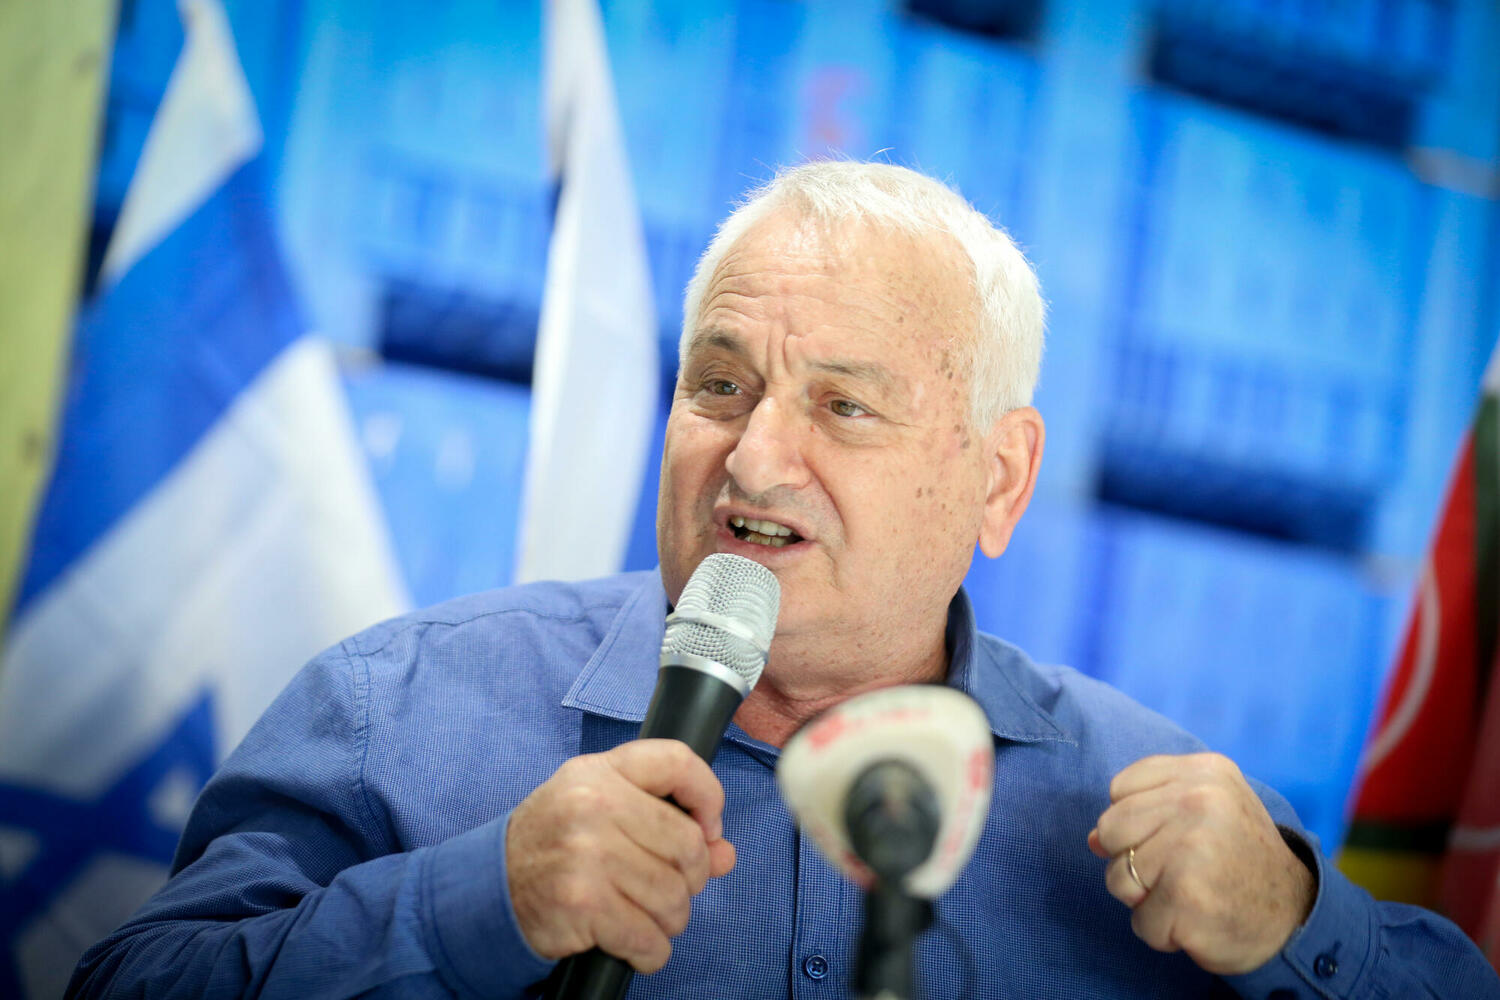  Алон Шустер: «Кахоль-лаван готова войти в коалицию с Ликудом» 